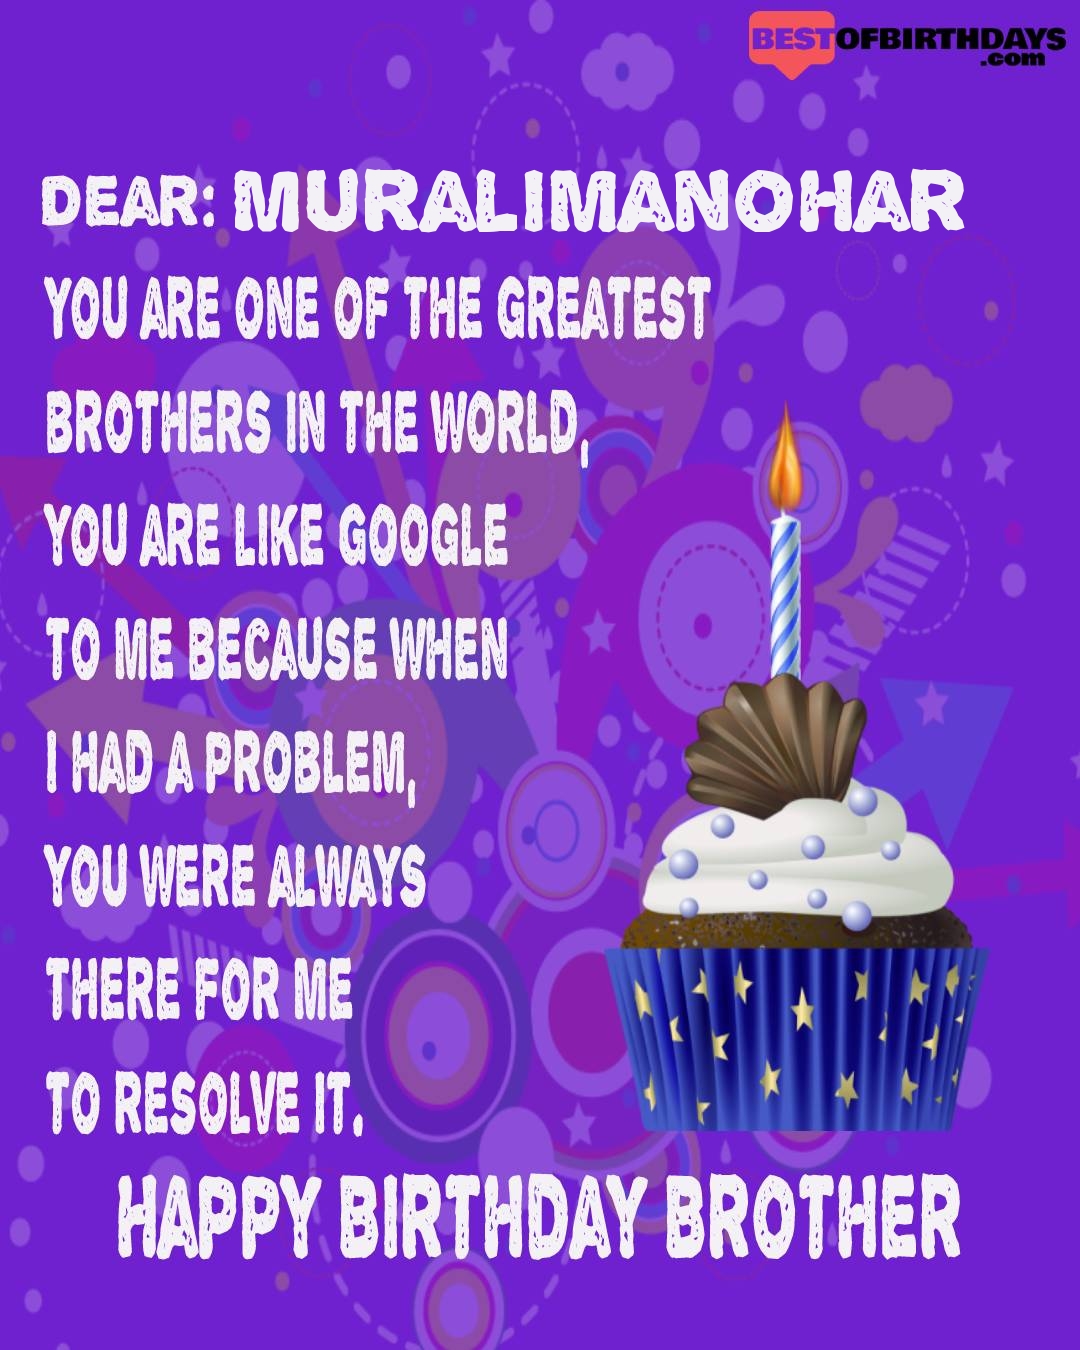 Happy birthday muralimanohar bhai brother bro